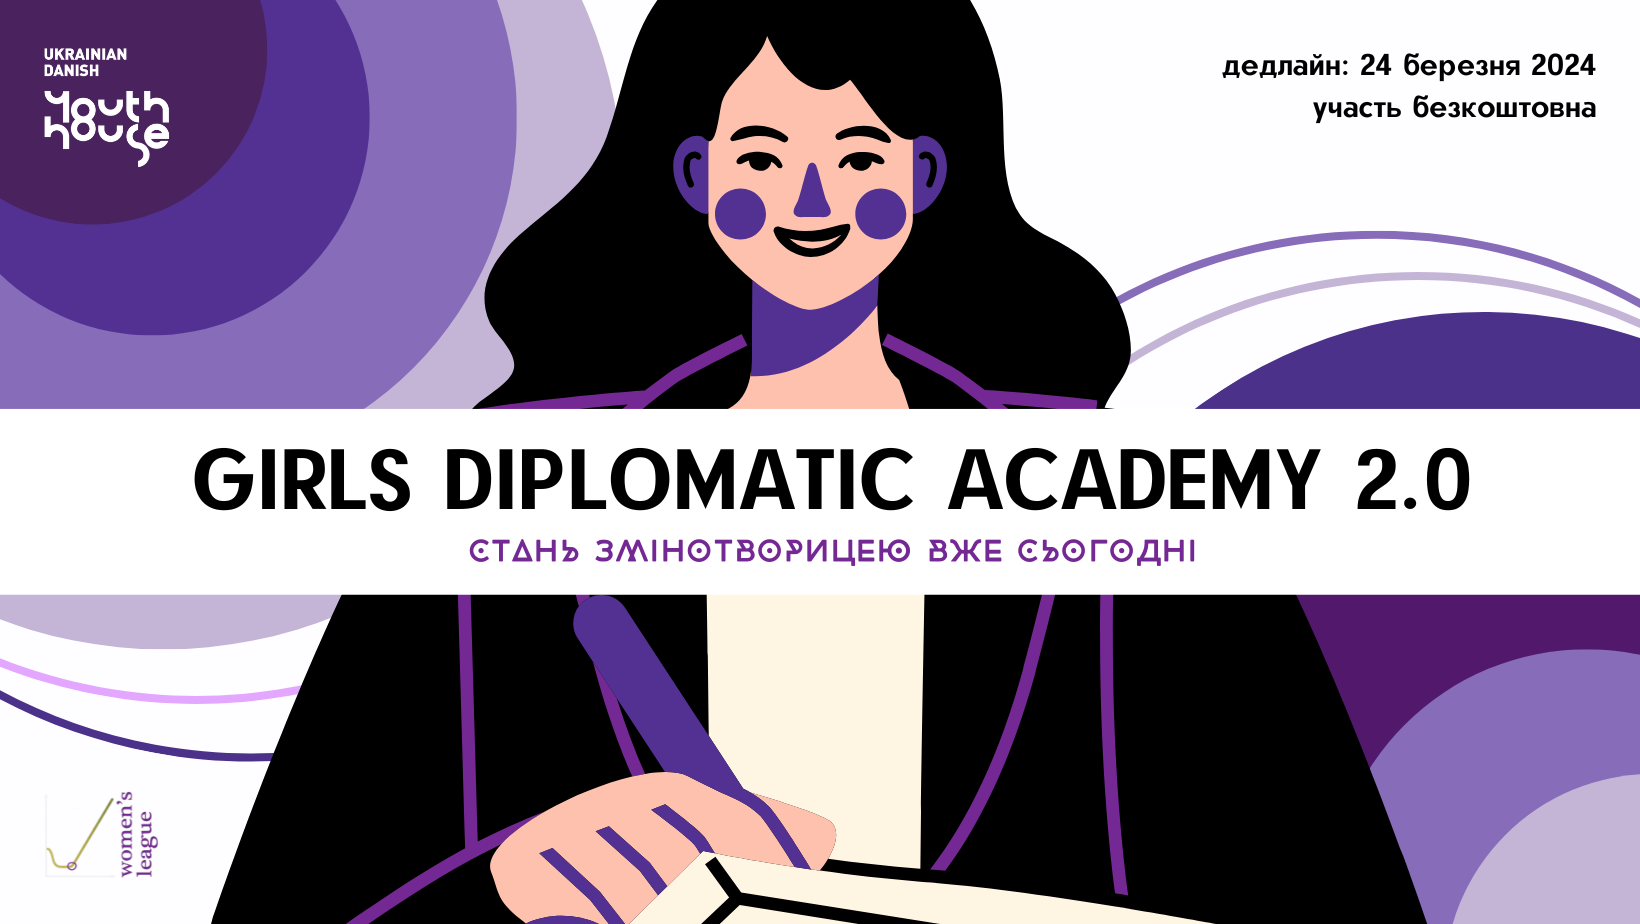 Академія дипломатії для дівчат 2.0